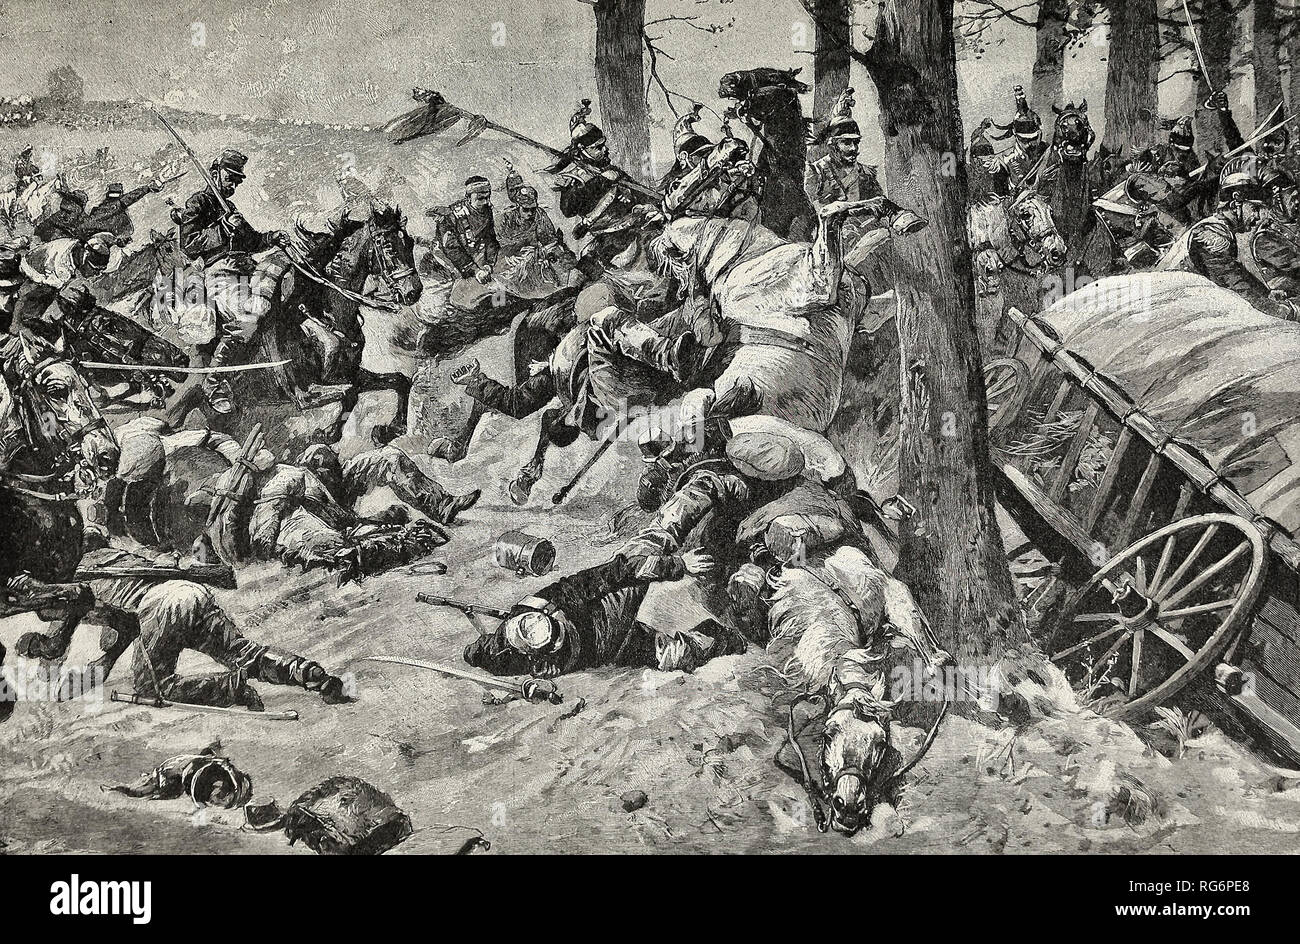 El derrocamiento de Francia - La desesperada pero inútil carga de la caballería francesa en Sedán Foto de stock